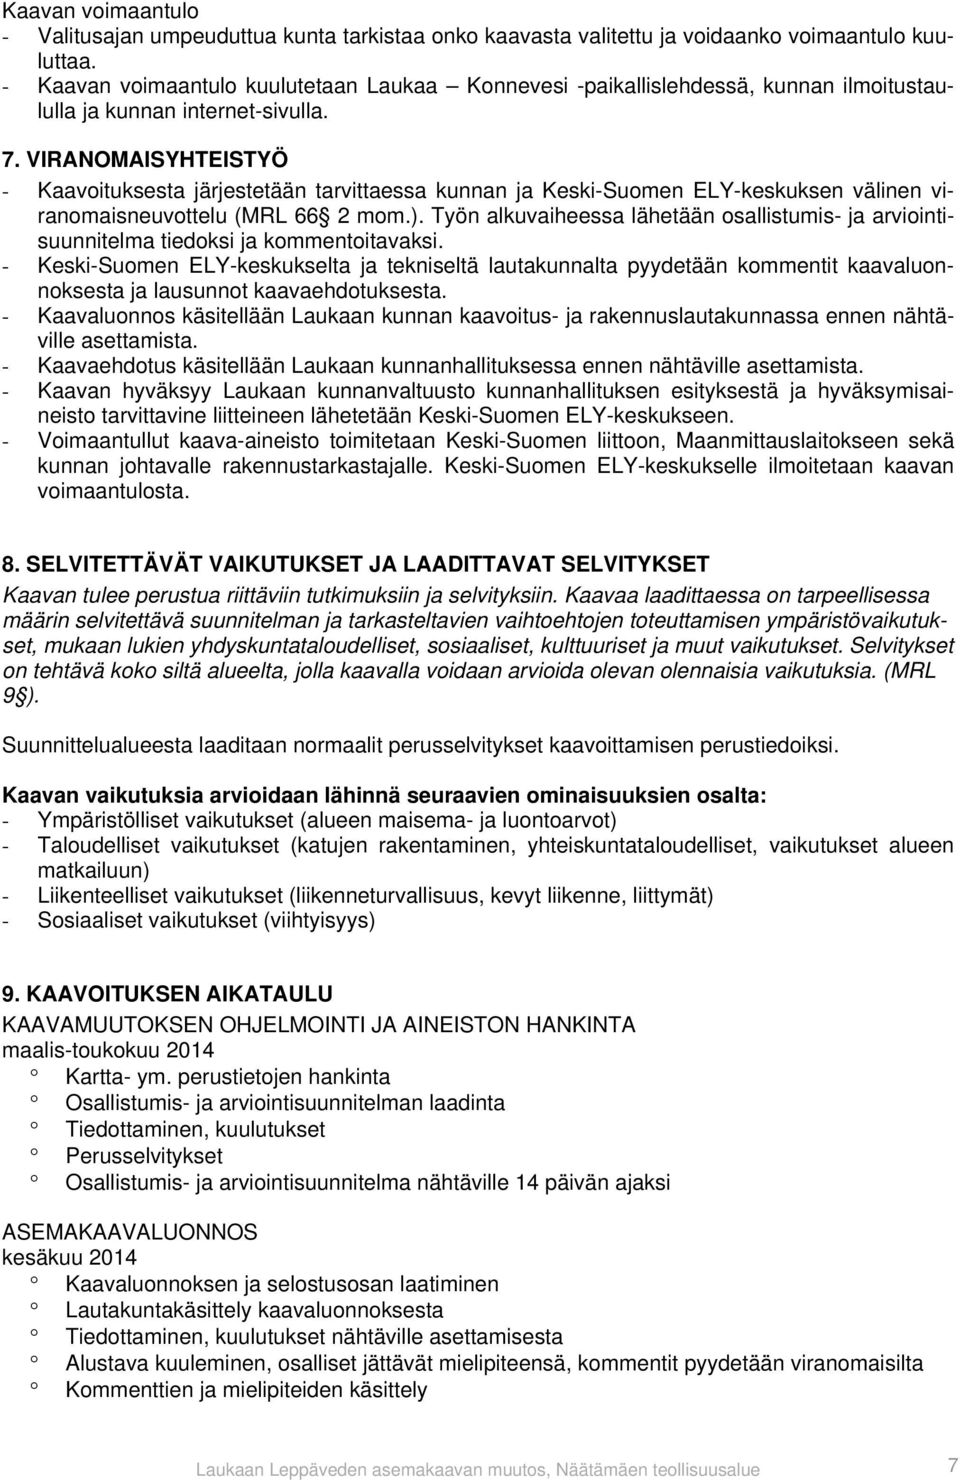 VIRANOMAISYHTEISTYÖ - Kaavoituksesta järjestetään tarvittaessa kunnan ja Keski-Suomen ELY-keskuksen välinen viranomaisneuvottelu (MRL 66 2 mom.).